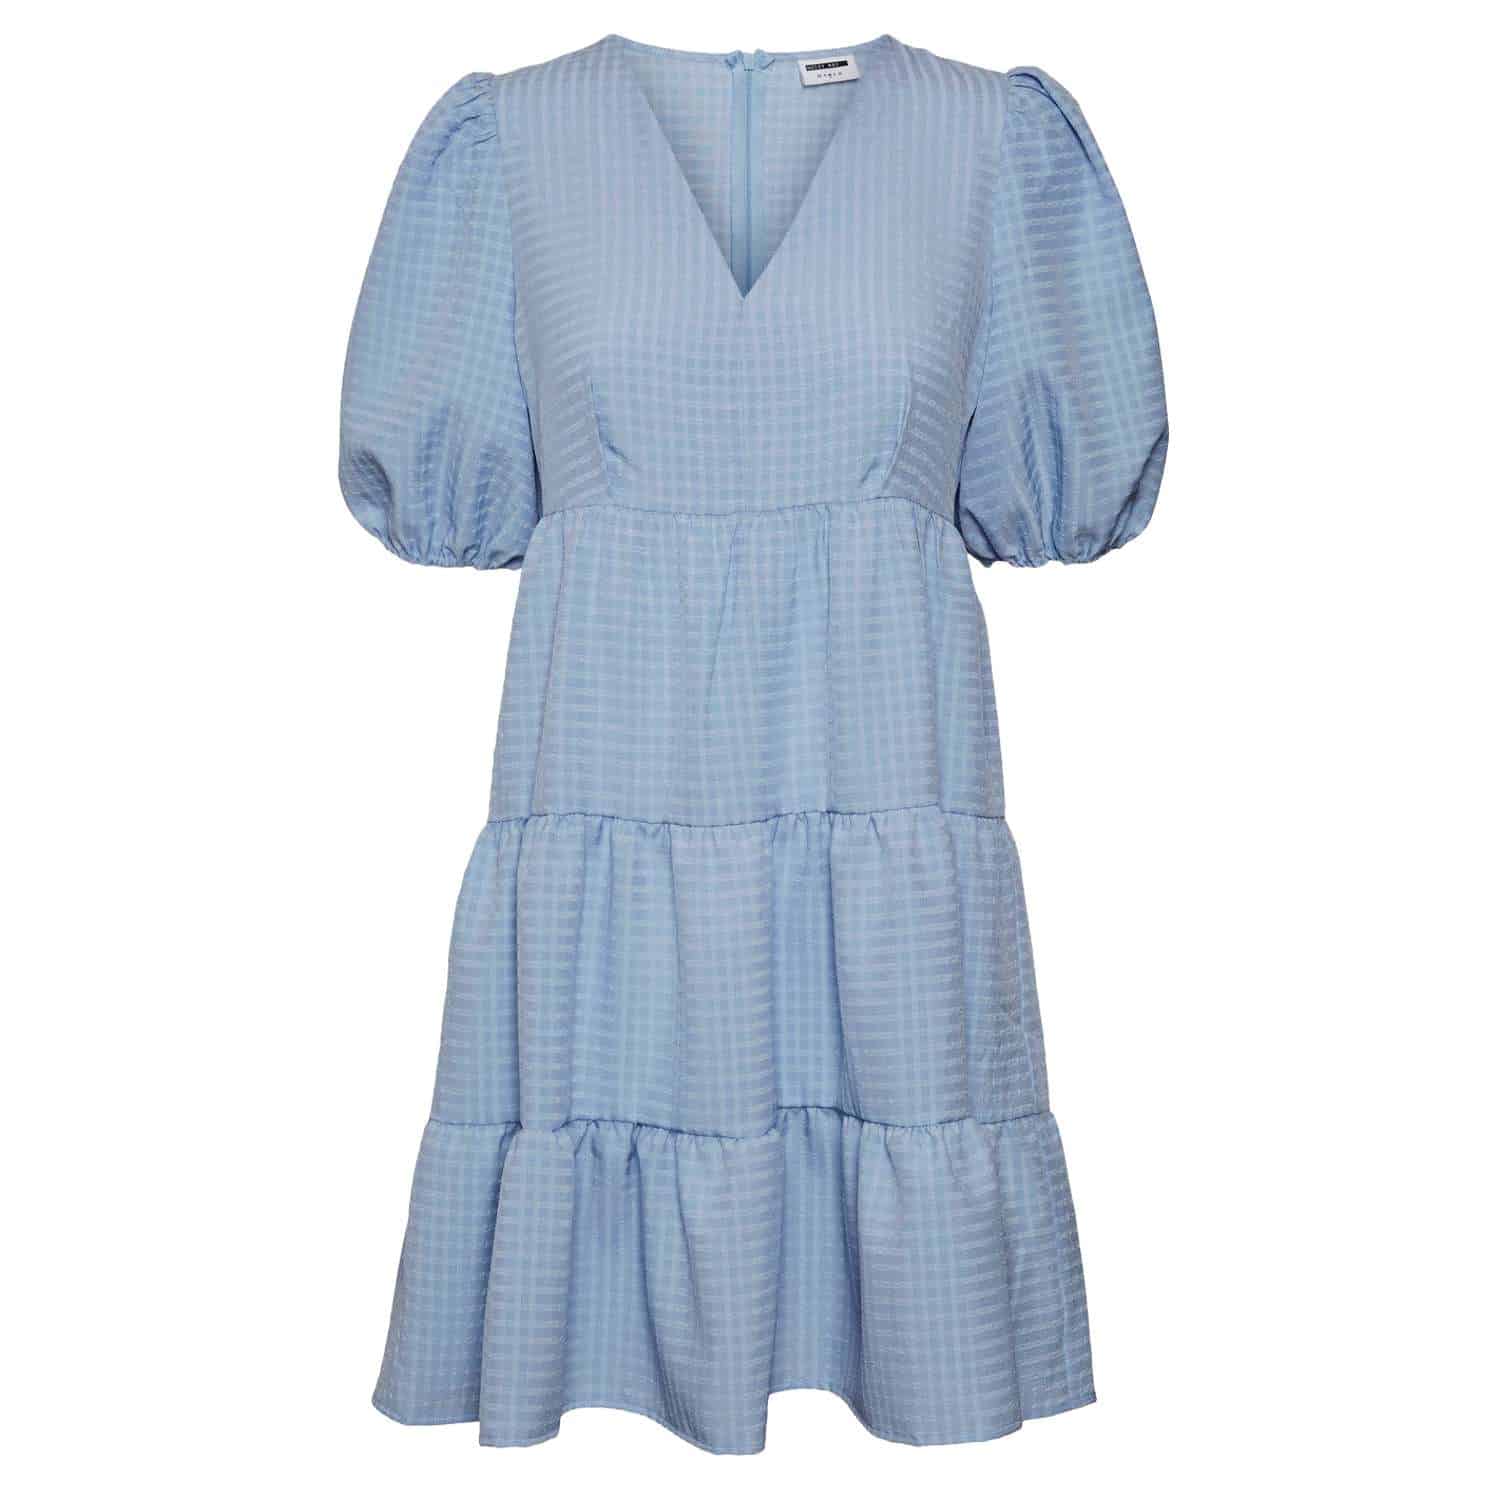 Lærerens dag belastning minimal Noisy May - Stacey dame kjole - Lyseblå - Str. L - Lyseblå kjole